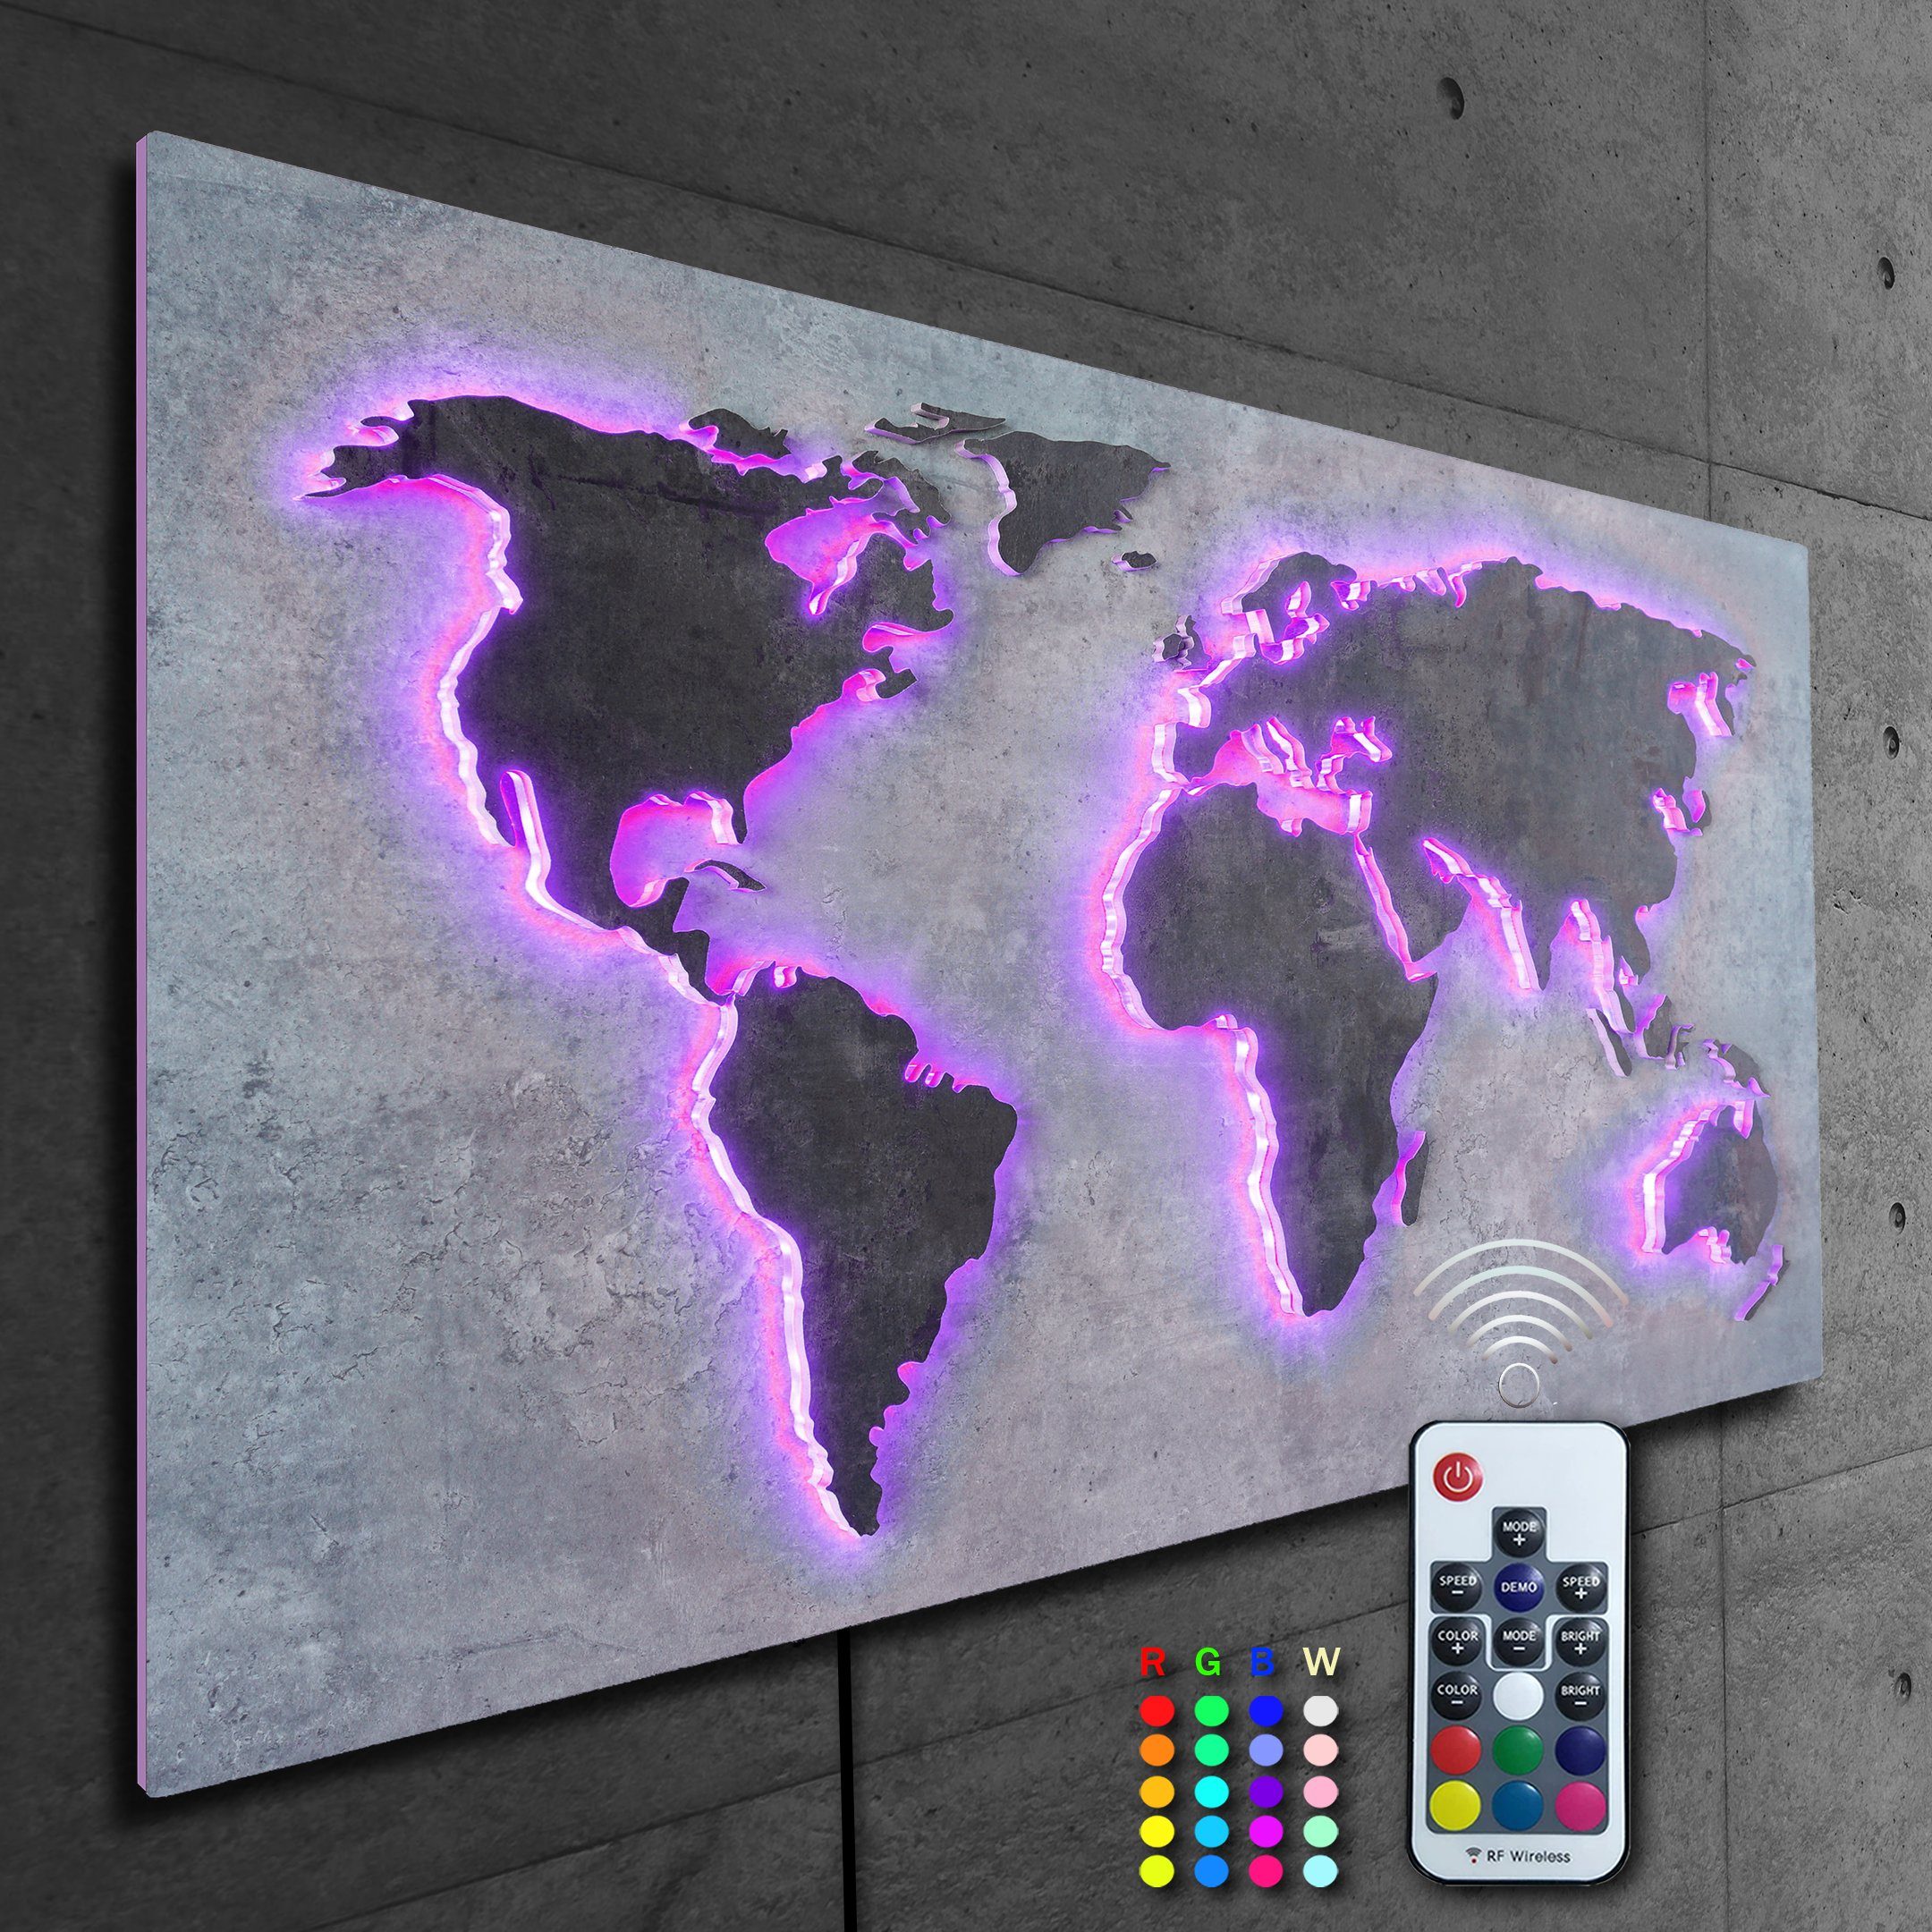 Weltkarte bunt Designer Rückplatte MAPPA Länder 3D-Effekt, Edelrost Fernbedienung RGB LUX steuerbaren STEIN-Optik Kontinente - 110x57cm LEDs mit Objekt ZENLED über Beton-Grau, umleuchtet Wanddekoobjekt